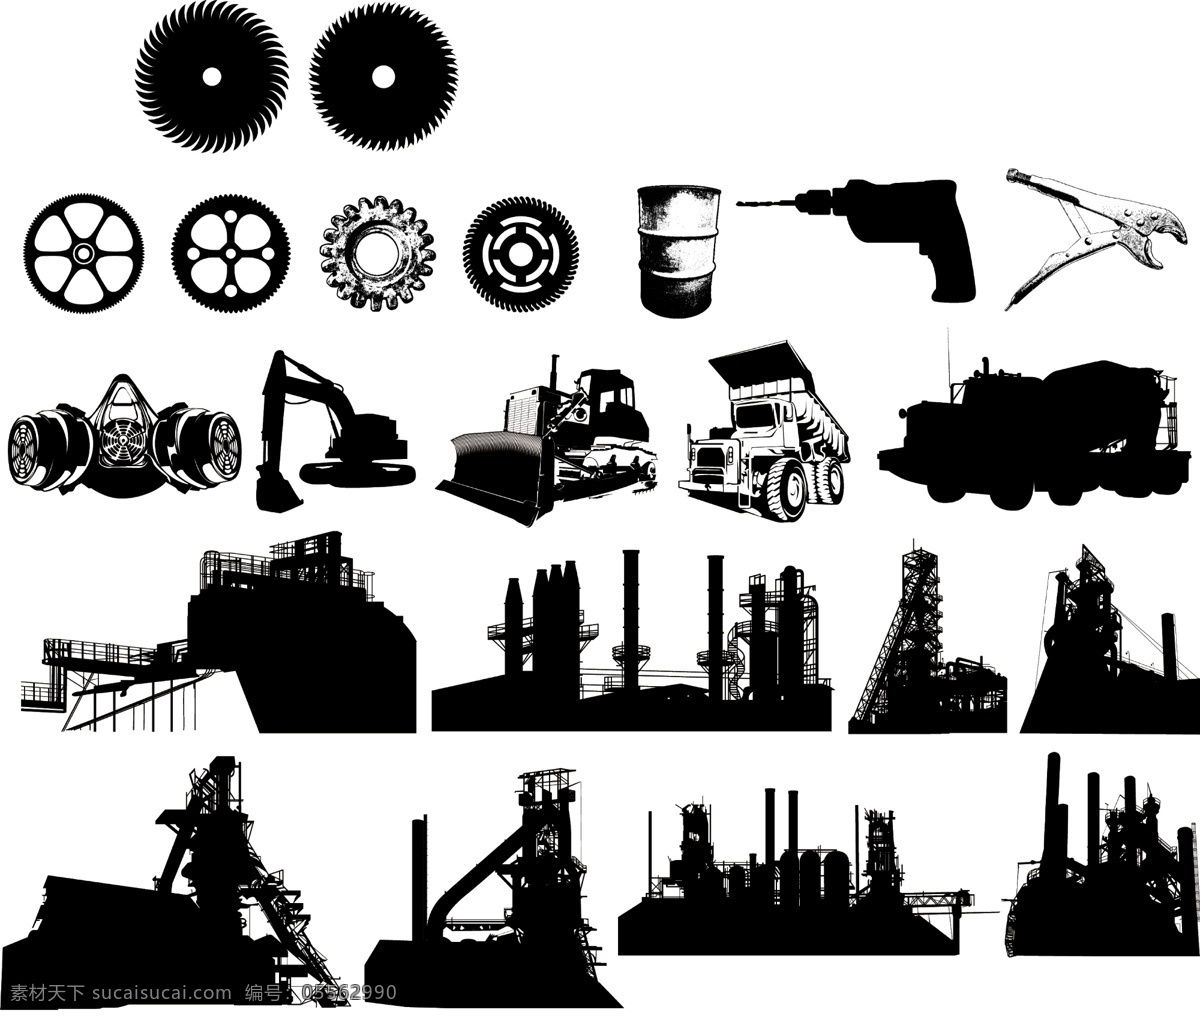 矢量 欧美 创意 黑白 图案 工业 元素 黑白工业 黑白图案 矢量格式 矢量素材 图形素材 矢量图形素材